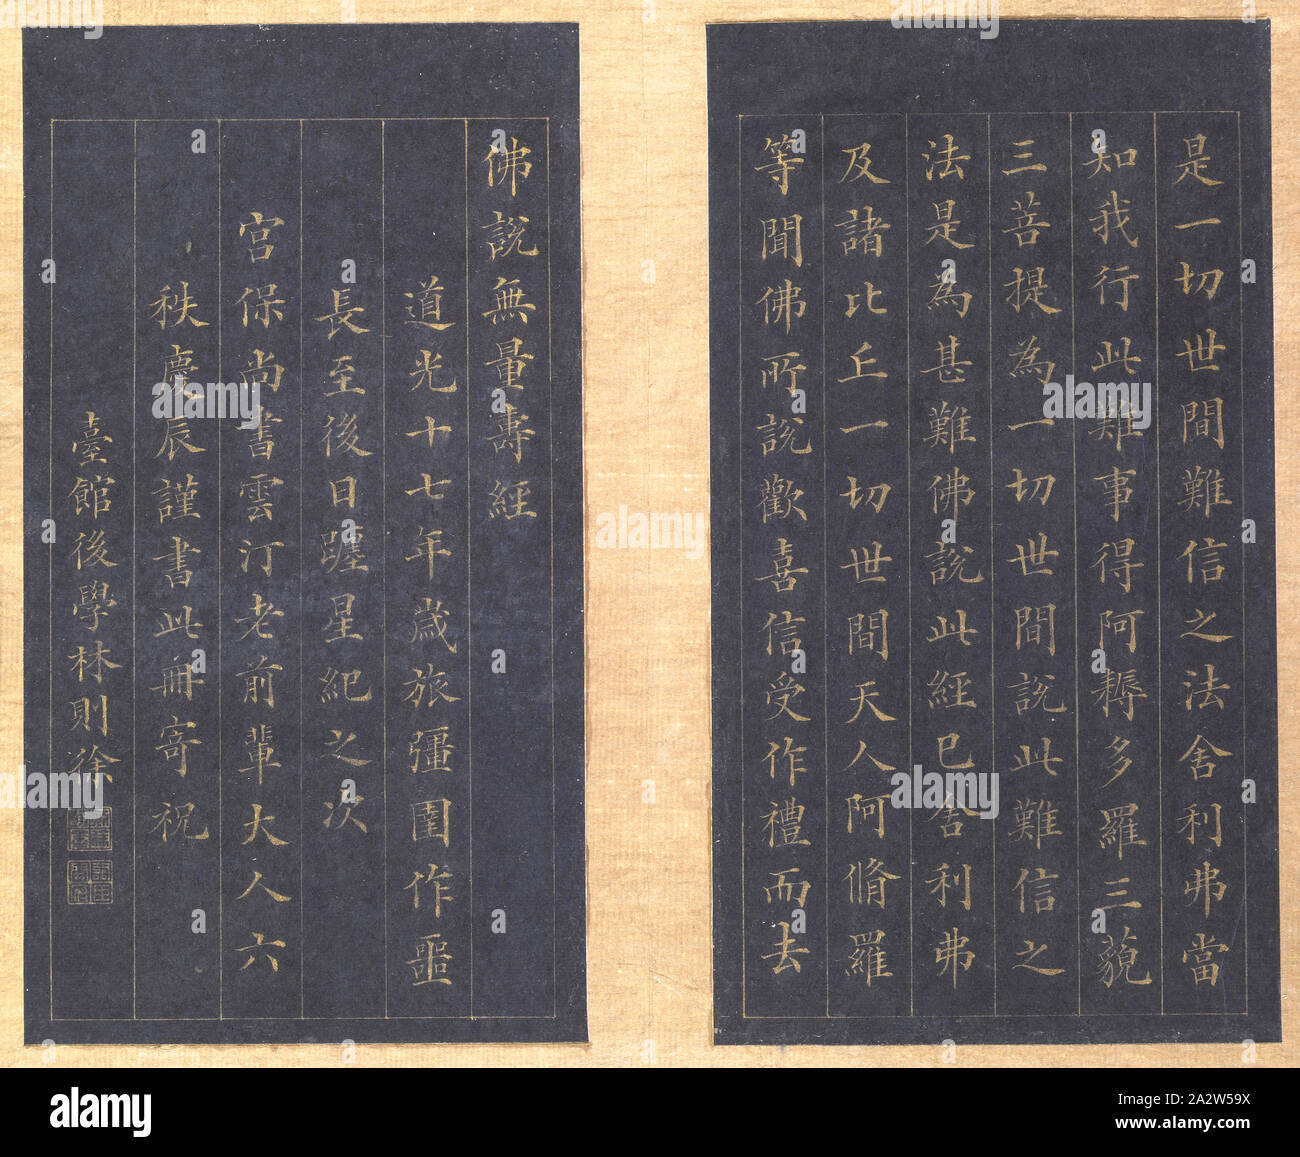 Sutra of Eternal Life (Wu liang shou jing [Sanskrit: Sukhavati-vyuha (Amitayus) Sutra]), Lin Zexu, Calligrapher (Chinese, 1785-1850), Qing dynasty, period, Daoguang, 1837, gold paint on blue paper, 1-1/8 x 7-1/4 x 12-1/8 in., Colophons by Chen Baoshen, Lin Yongyu and Wu Yuan Signed: Seal: [Zixu hanmo] Seal: [Cixhen Minfu], Asian Art Stock Photo